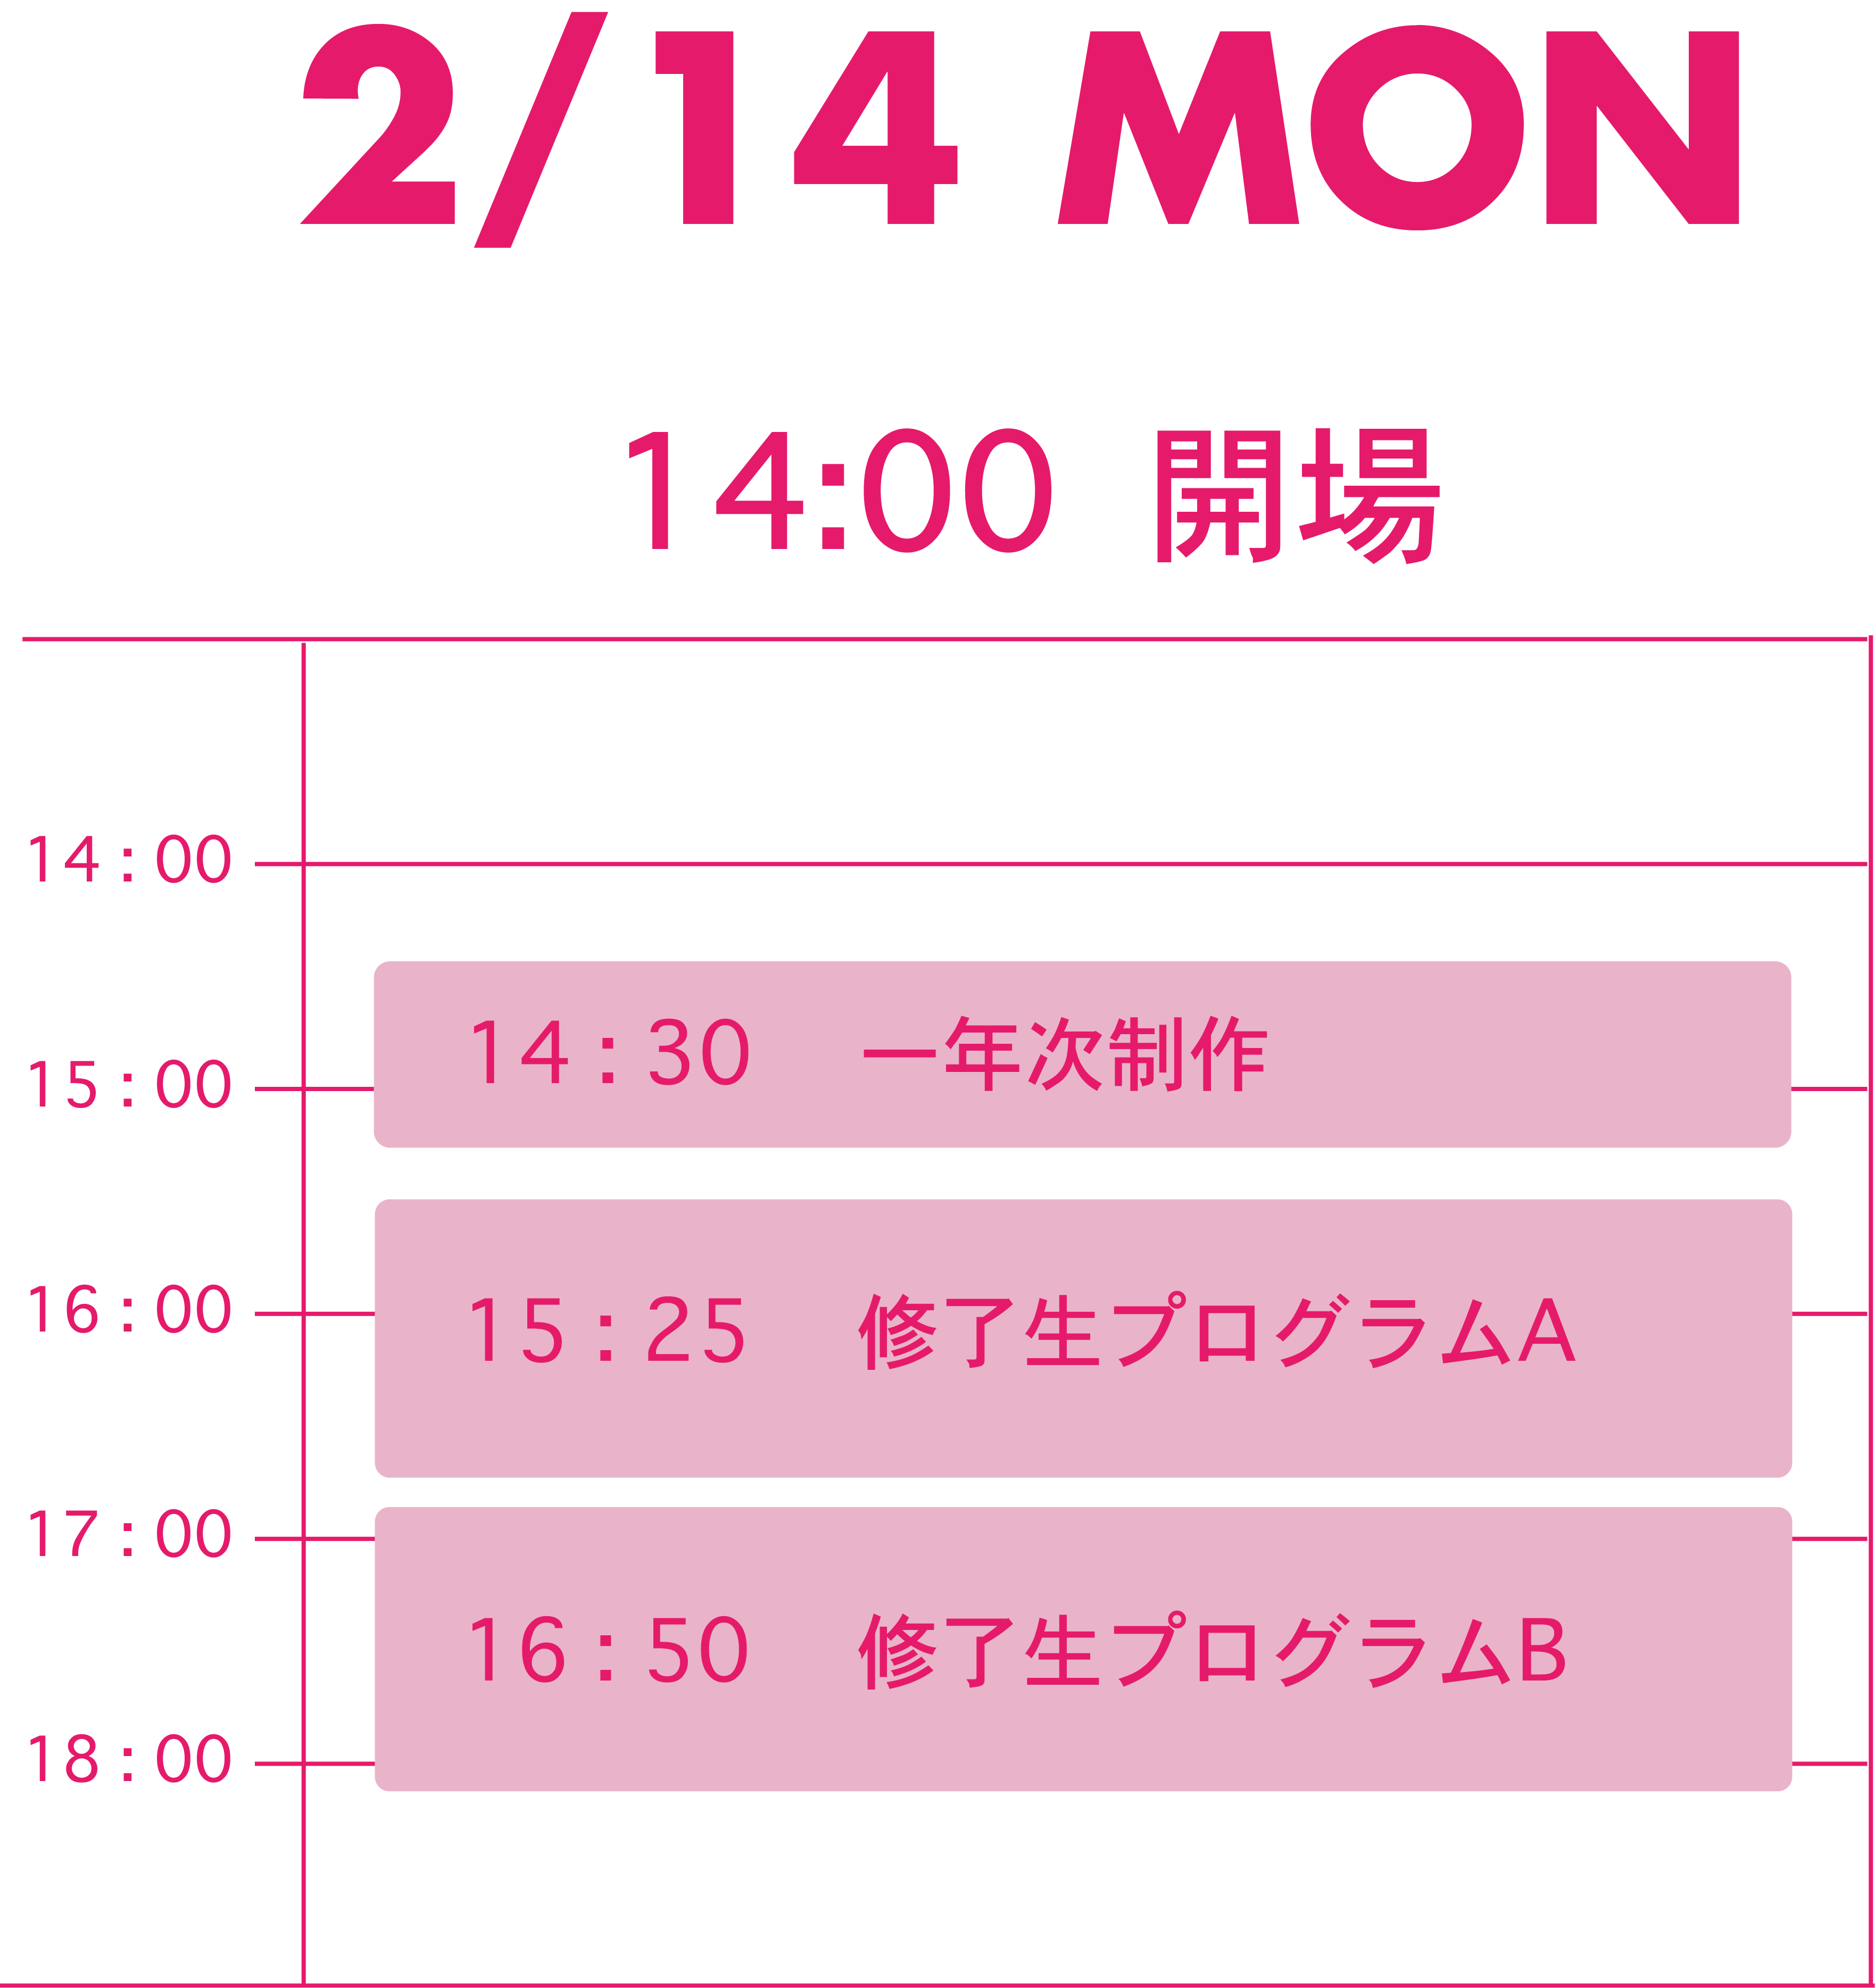 2/12 schedule